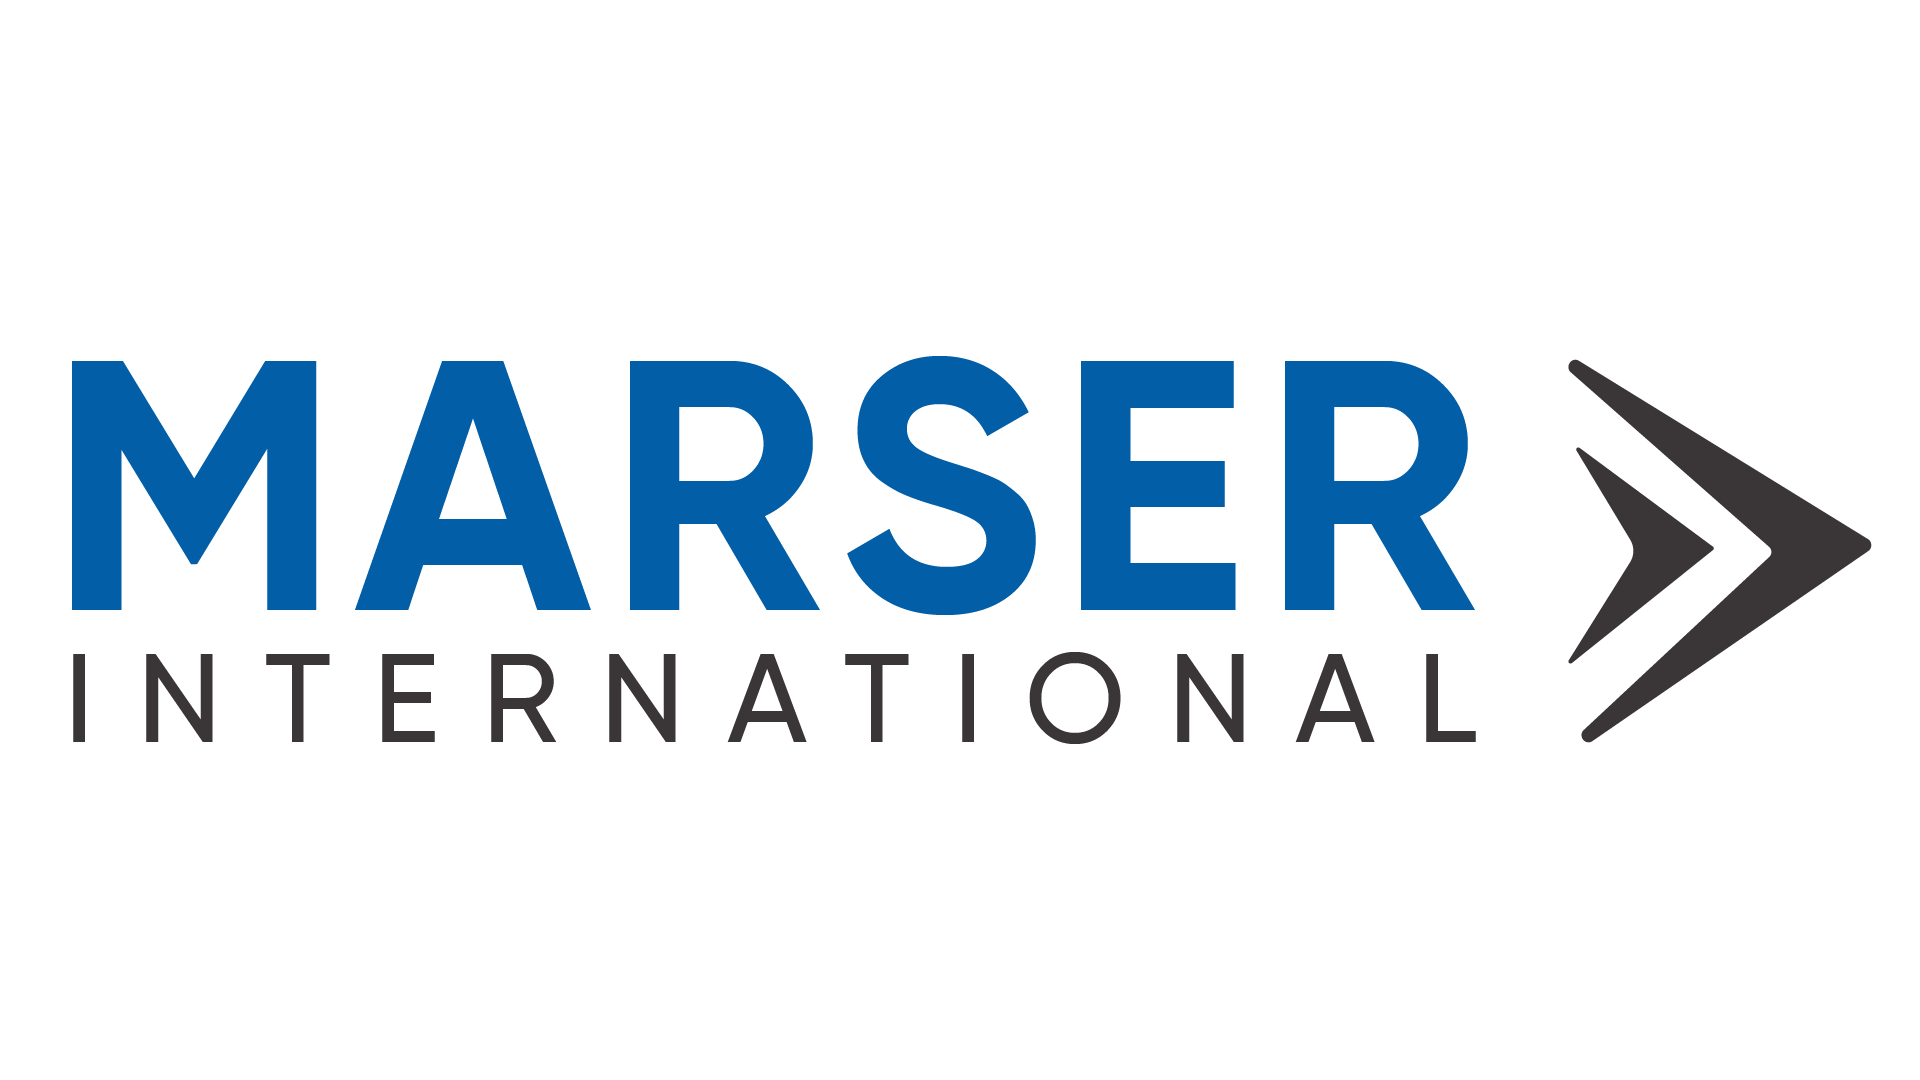 MARSER International